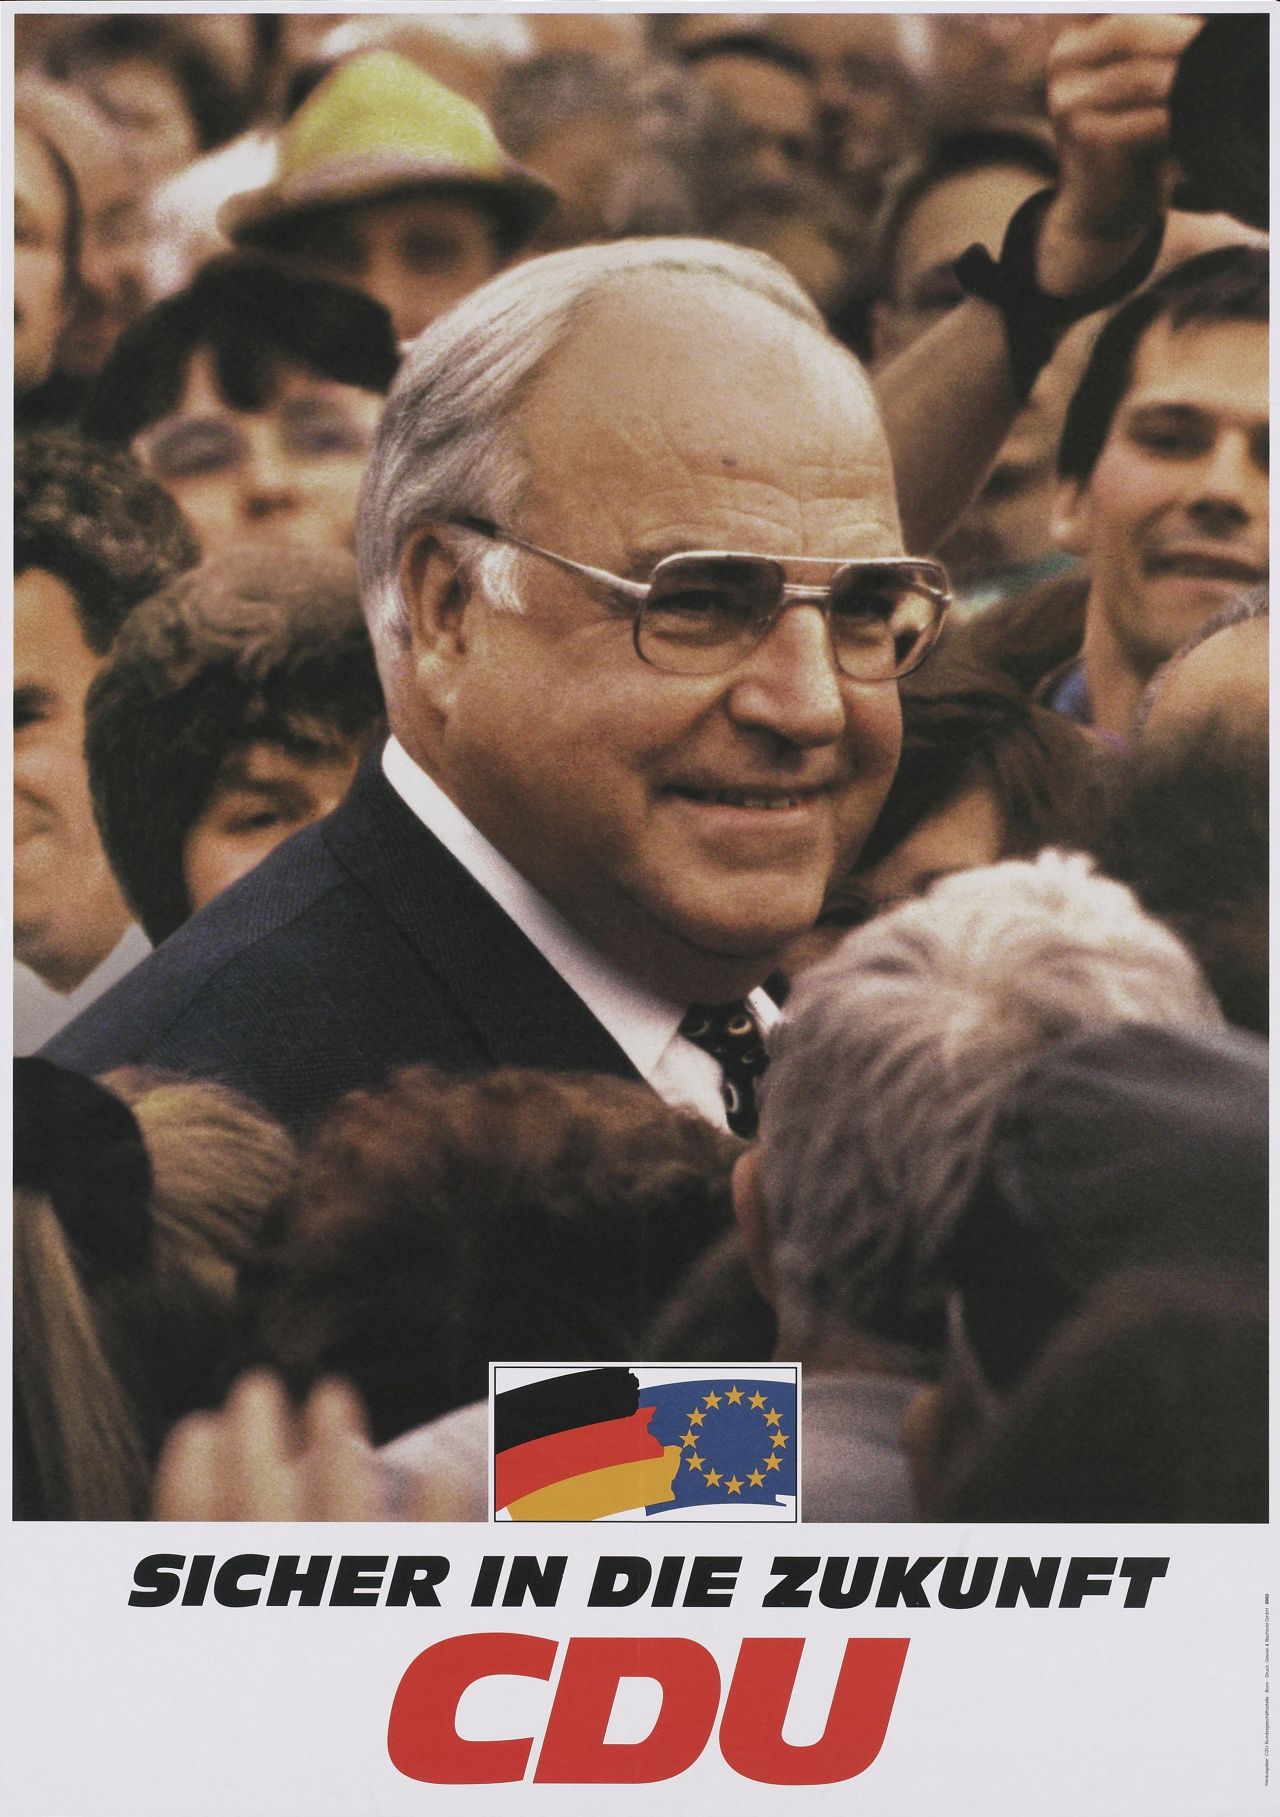 Fotomontage: Porträt Helmut Kohls, umgeben von Menschenmenge; im Bild unten: Deutschland- und Europaflagge; darunter auf weißem Feld: Sicher in die Zukunft - CDU (schwarz, rot).